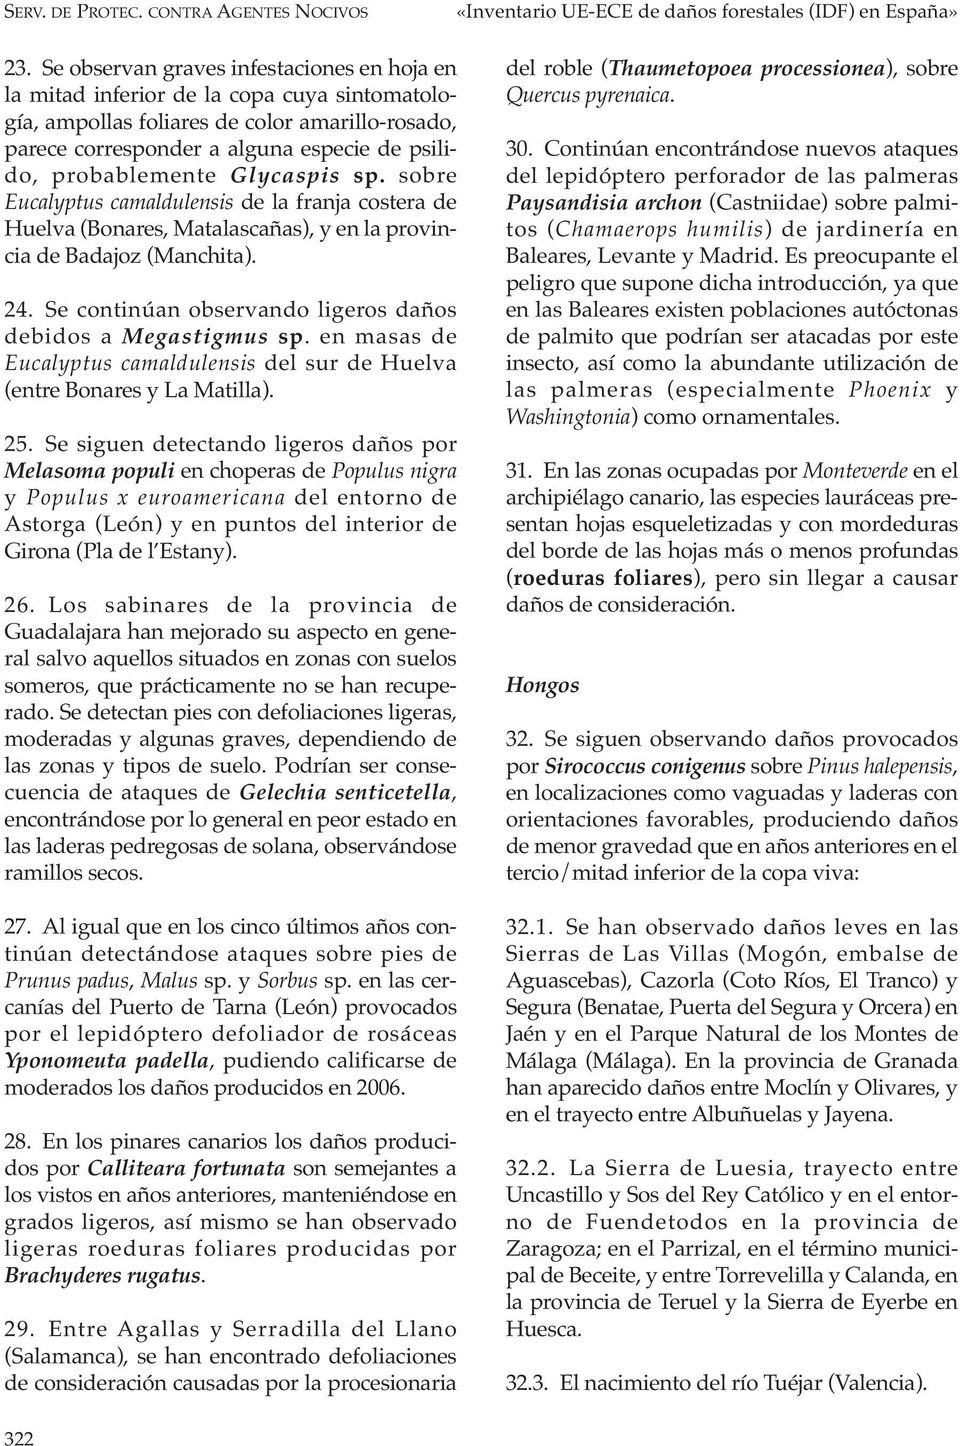 probablemente Glycaspis sp. sobre Eucalyptus camaldulensis de la franja costera de Huelva (Bonares, Matalascañas), y en la provincia de Badajoz (Manchita). 24.